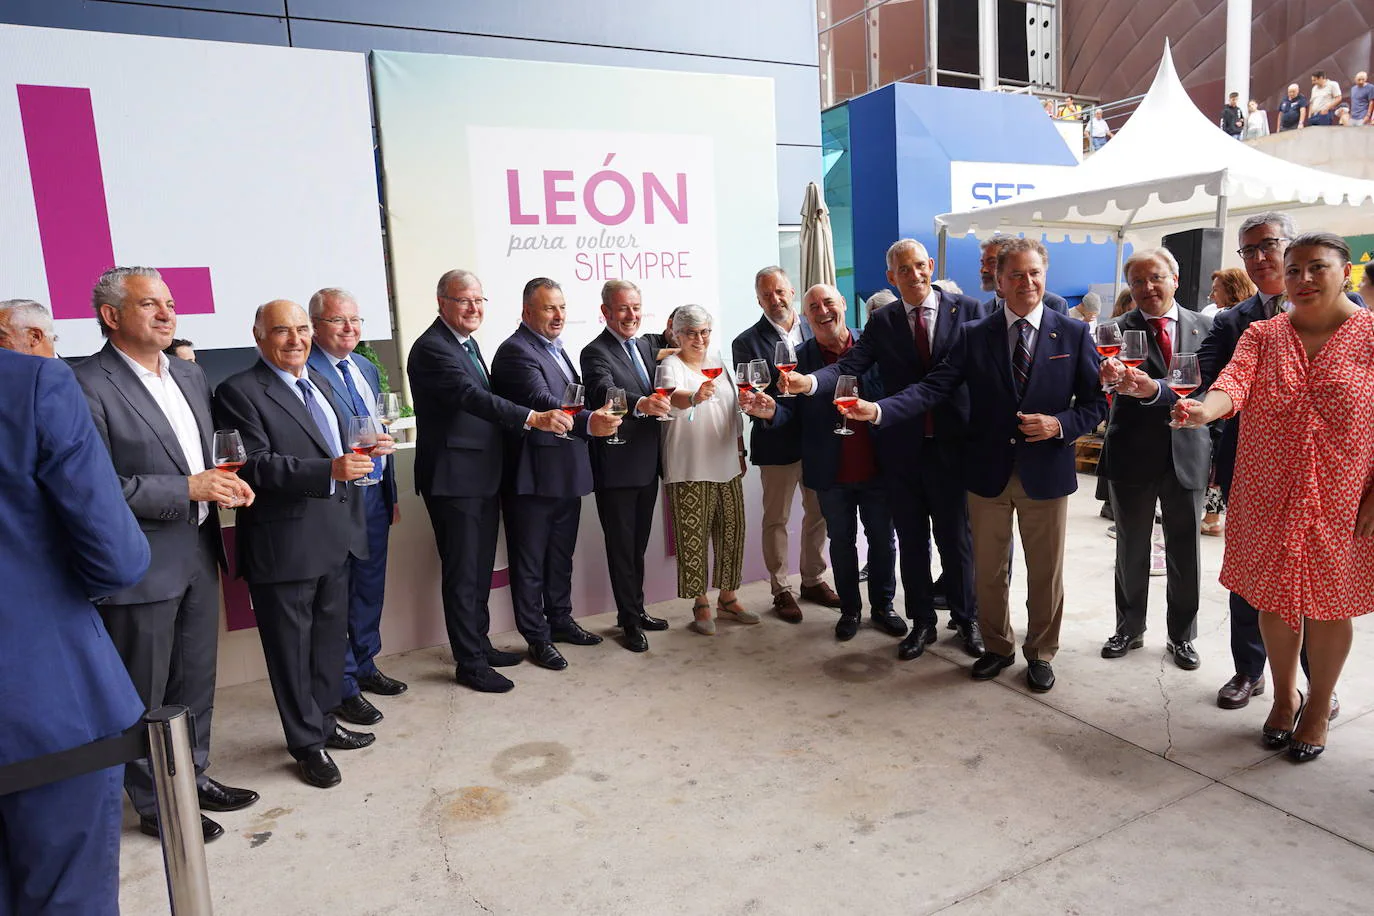 Fotos: La Feria de Muestras de Gijón abraza a León